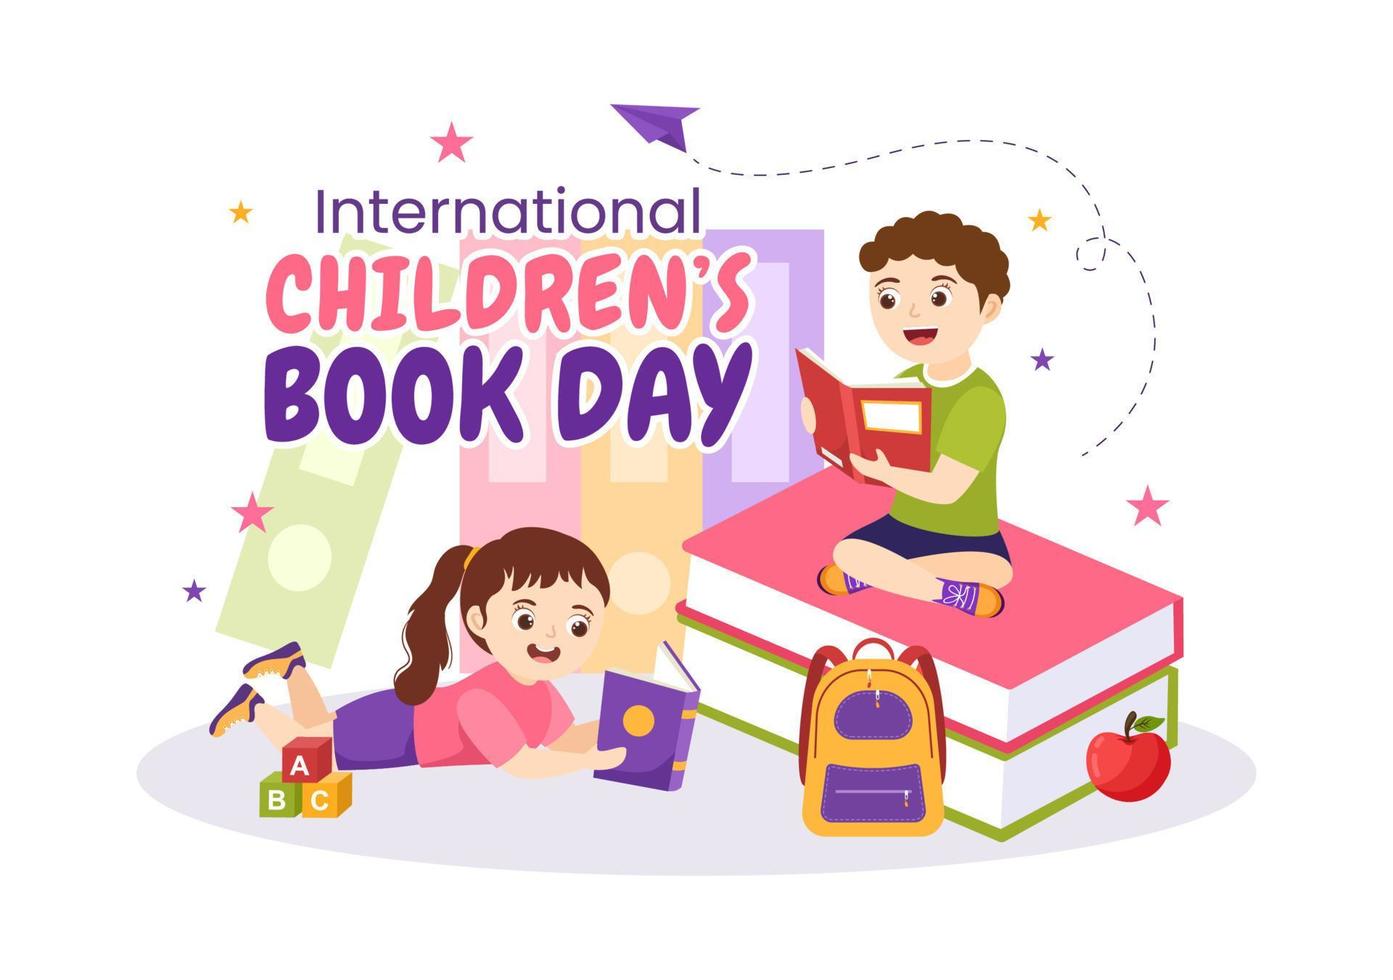 International Kinder- Buch Tag auf April 2 Illustration mit Kinder lesen oder Schreiben Bücher im eben Karikatur Hand gezeichnet zum Landung Seite Vorlagen vektor